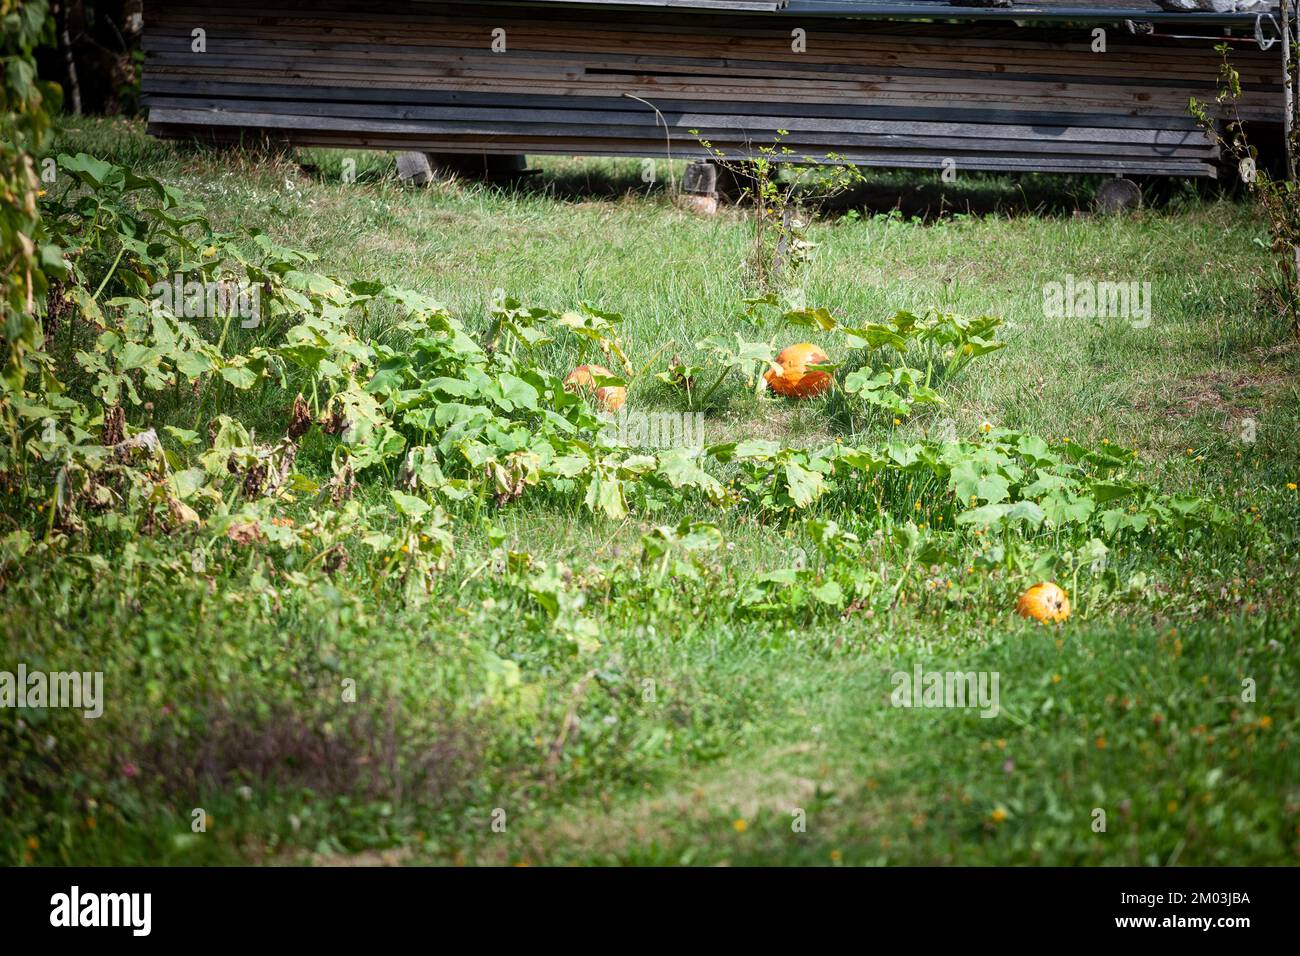 Imagen de un campo verde en un jardín con calabazas listas para ser cosechadas. Una calabaza es un cultivar de calabaza de invierno que es redonda con suave, ligeramente Foto de stock